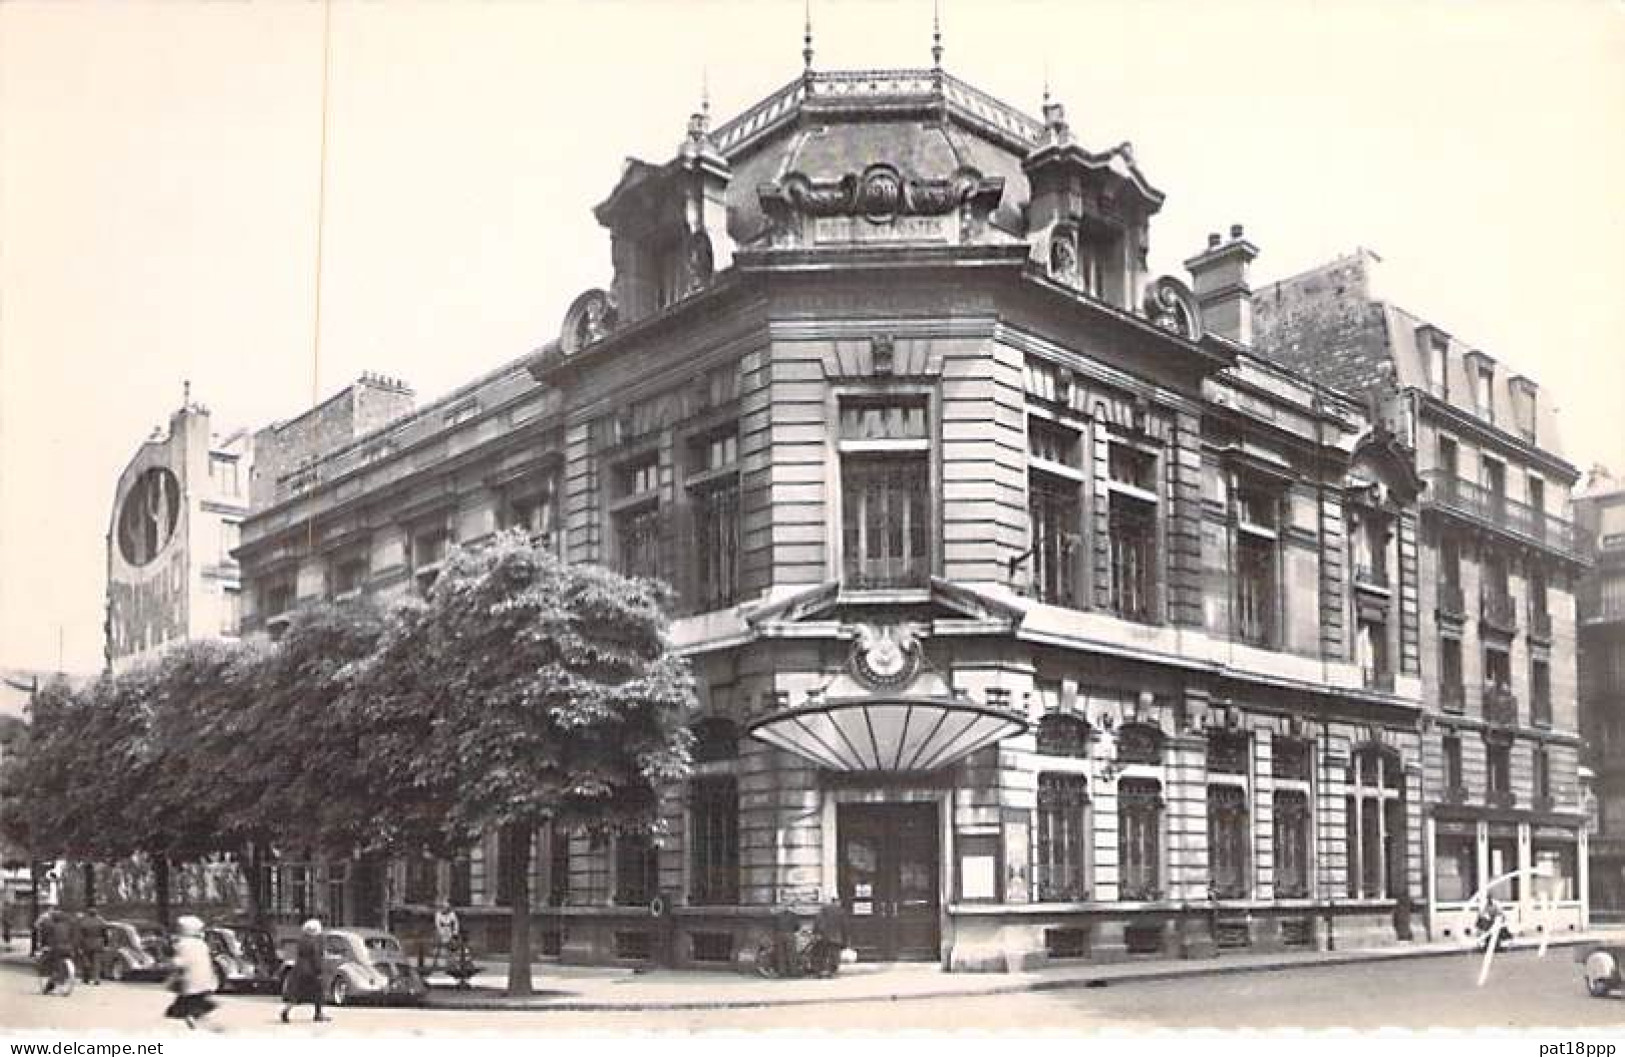 FRANCE - Thème POSTE (PTT) - Lot de 15 jolies CPSM dentelées 1950-70's (bureaux des Postes diversifiés) en BON ETAT